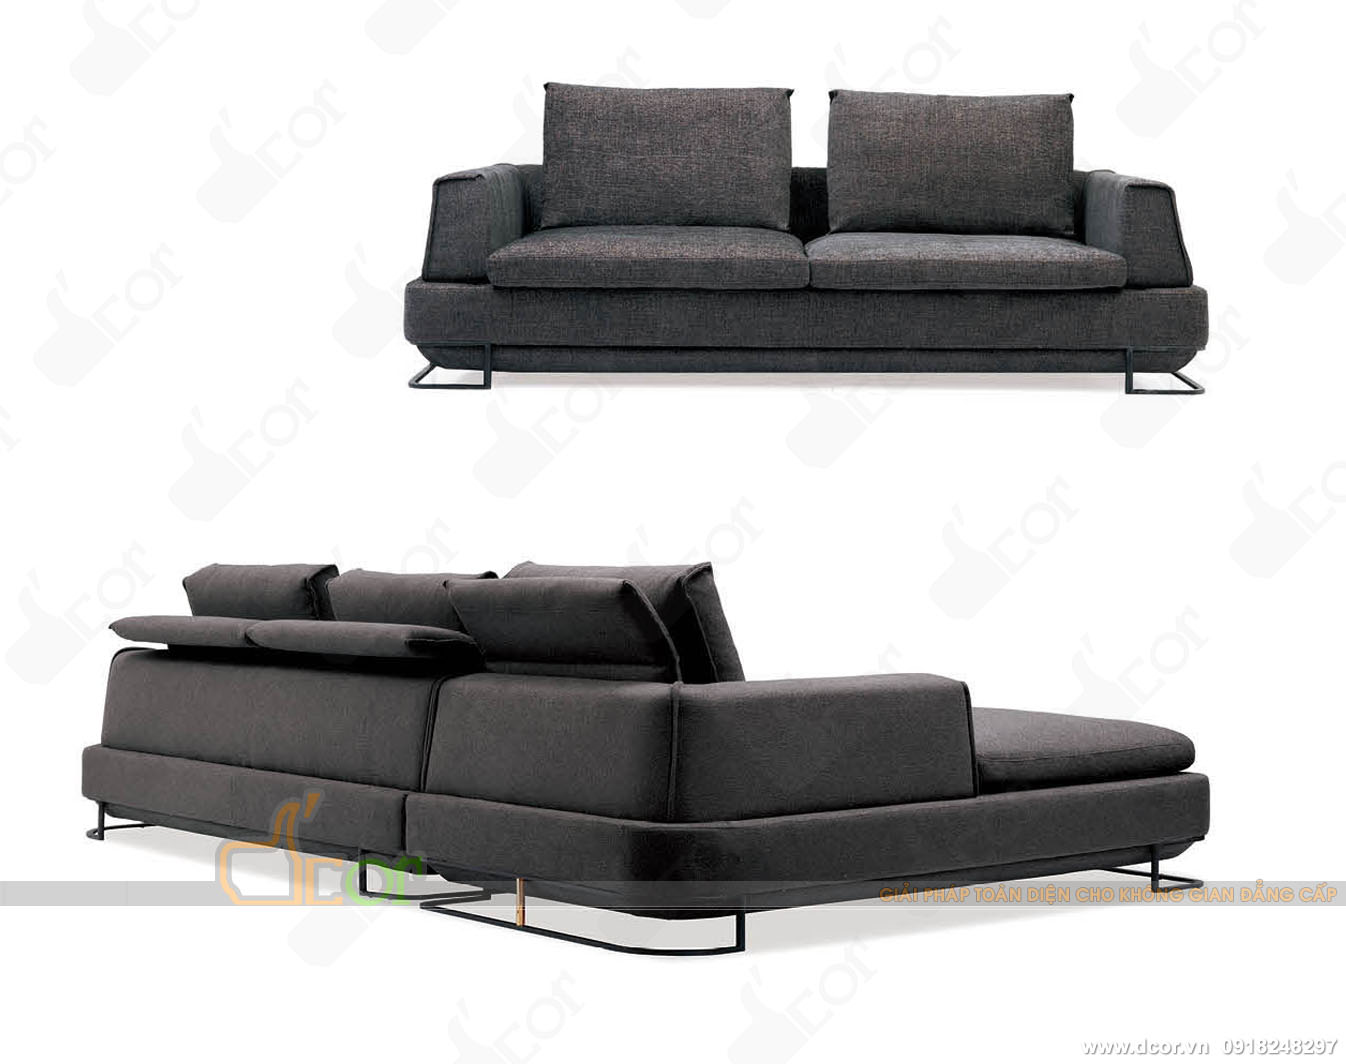 Ghế sofa phòng khách cao cấp cực đẹp, sẵn hàng: NG623